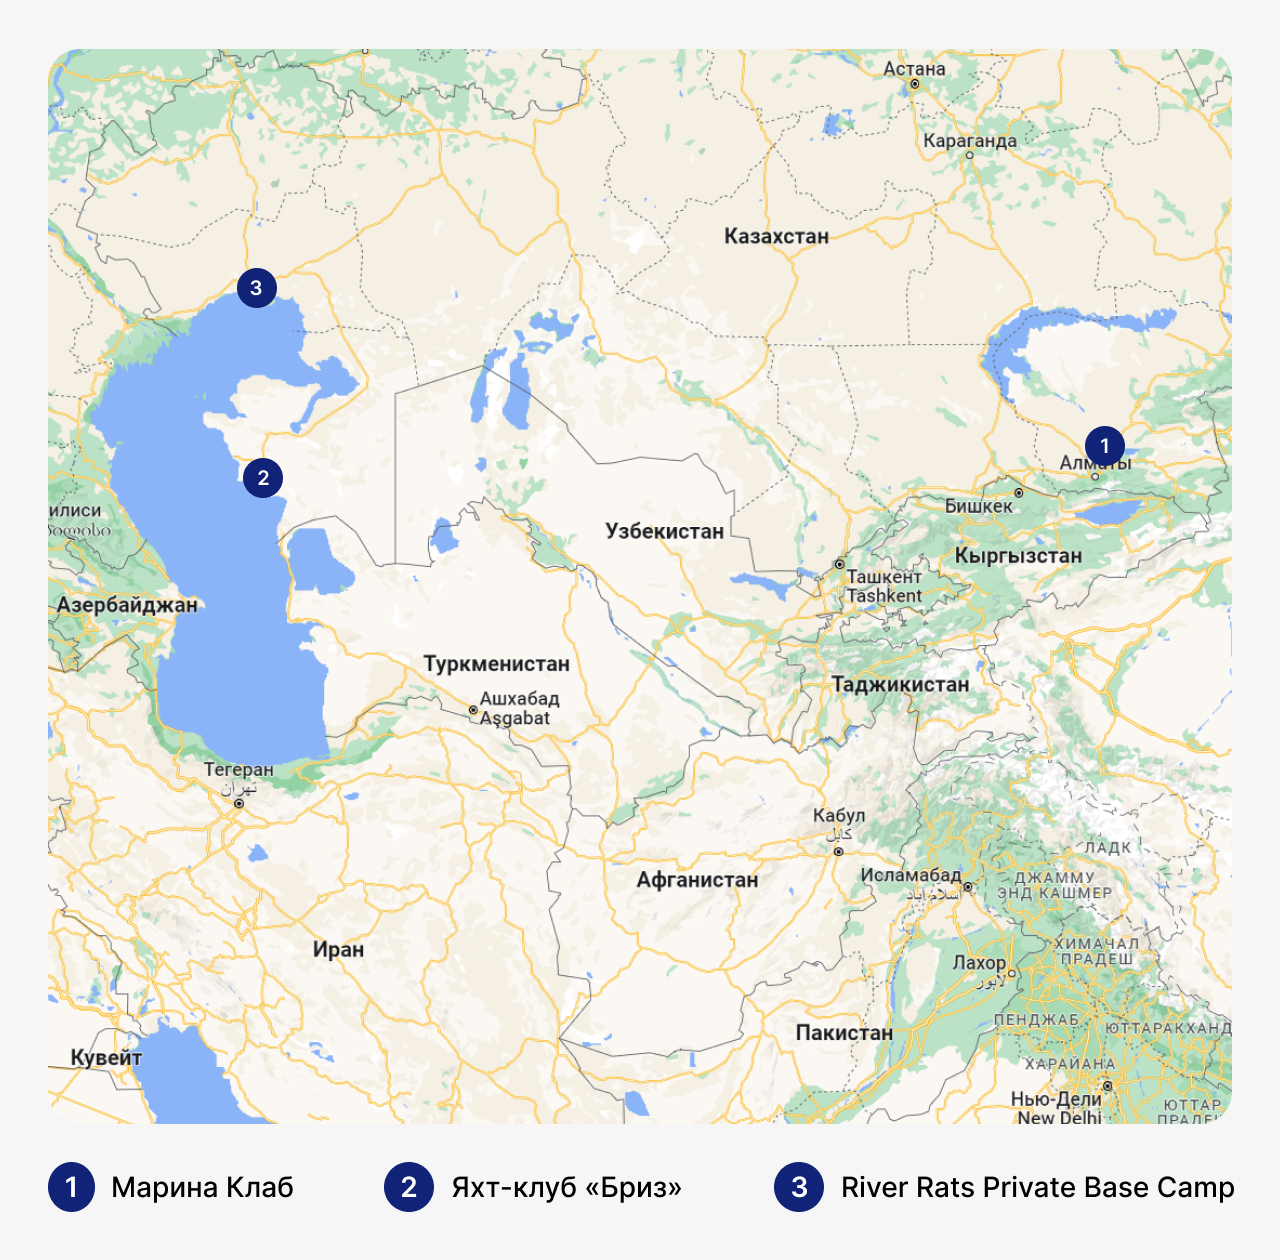 Лучшие марины в Казахстане, карта Казахстана с маринами, стоянка для яхт в Казахстане, где хранить яхты в Казахстане
